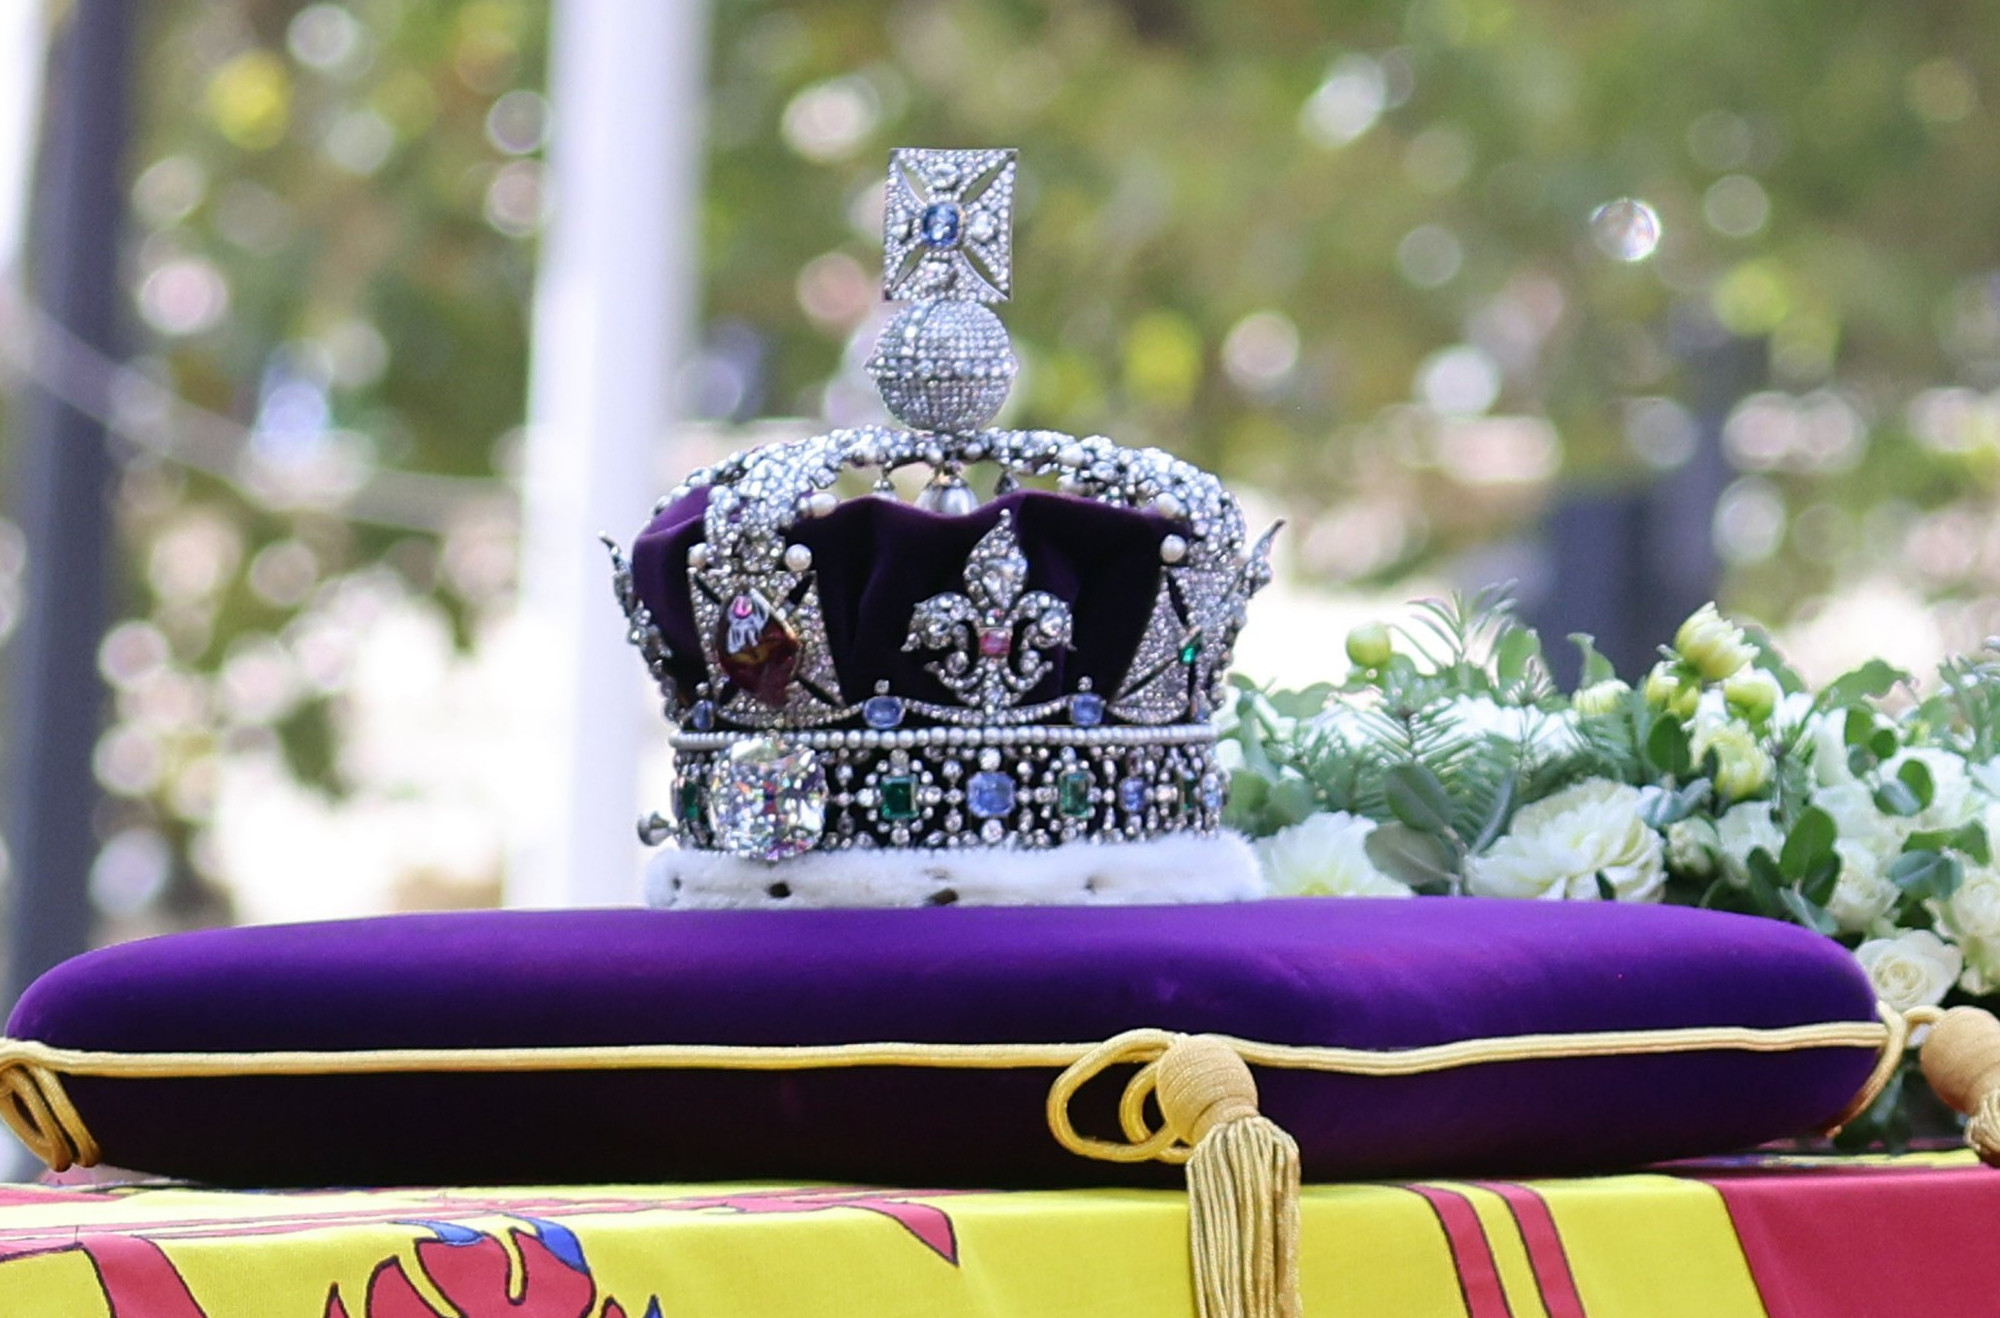 Mengenal The Imperial State Crown, Mahkota Yang Dipakai Ratu Elizabeth Ii